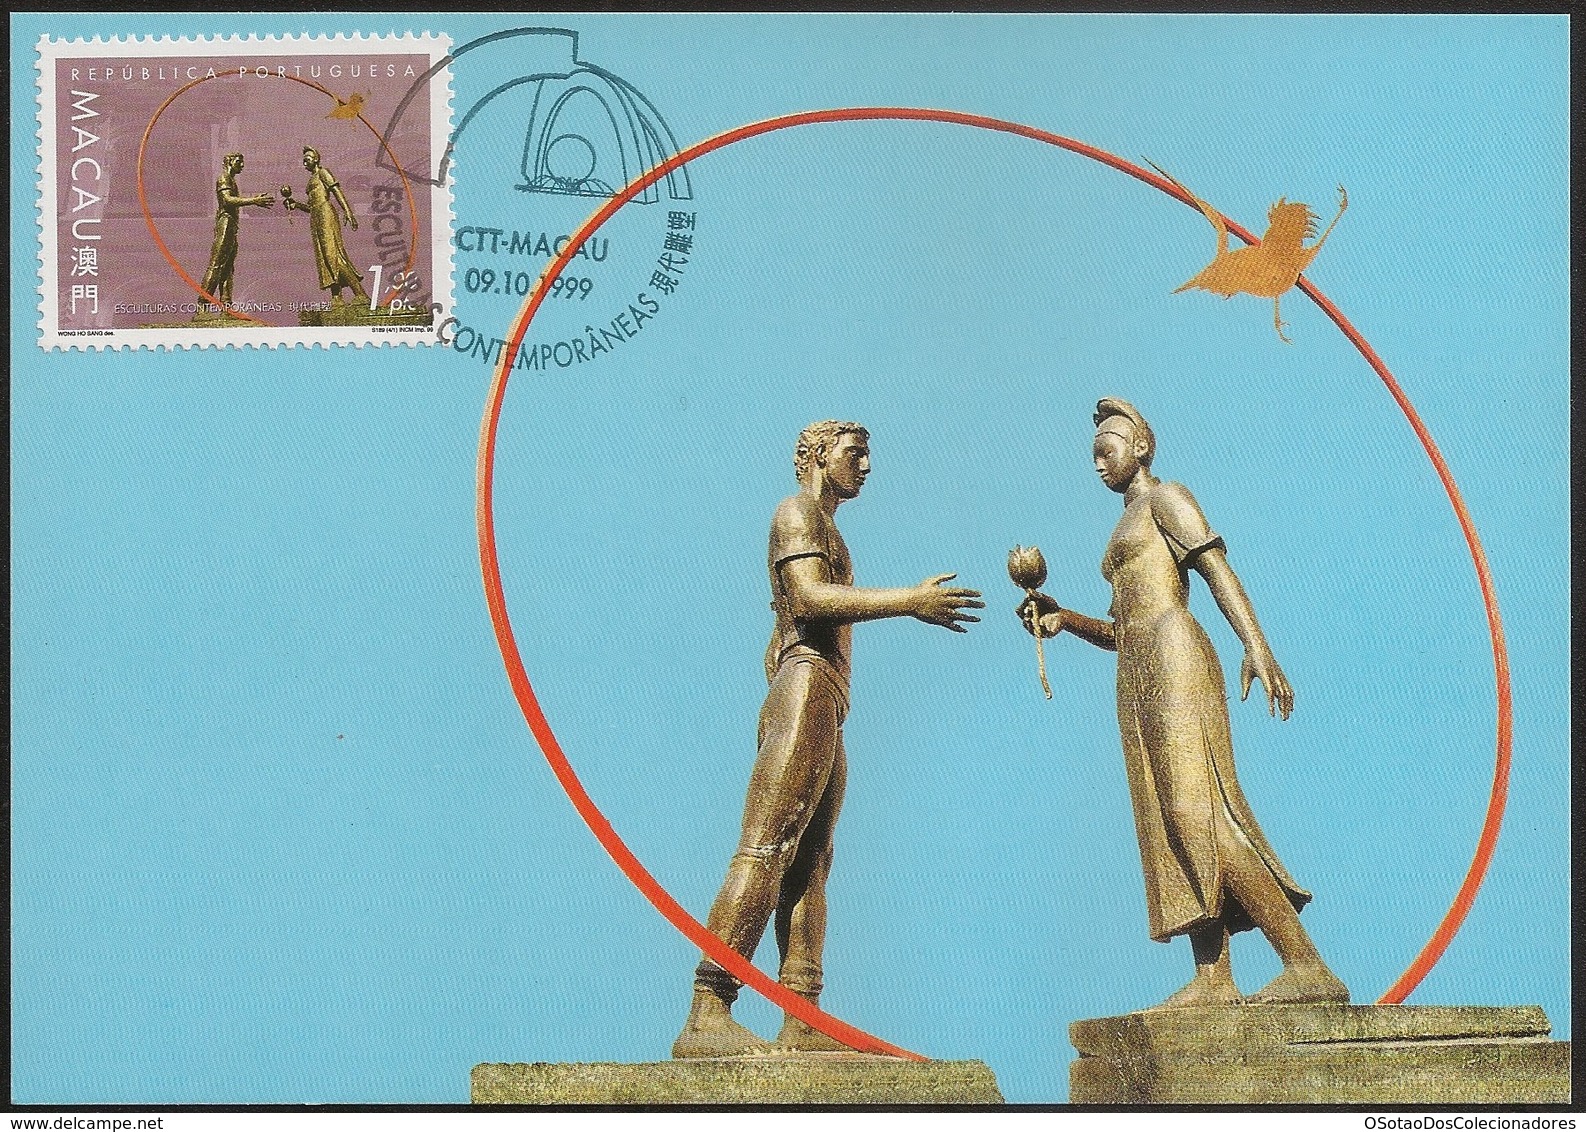 POSTAL MAXIMO - MAXIMUM CARD - Macau Macao China Portugal 1999 - Esculturas Contemporâneas - Contemporary Sculptures - Postal Stationery